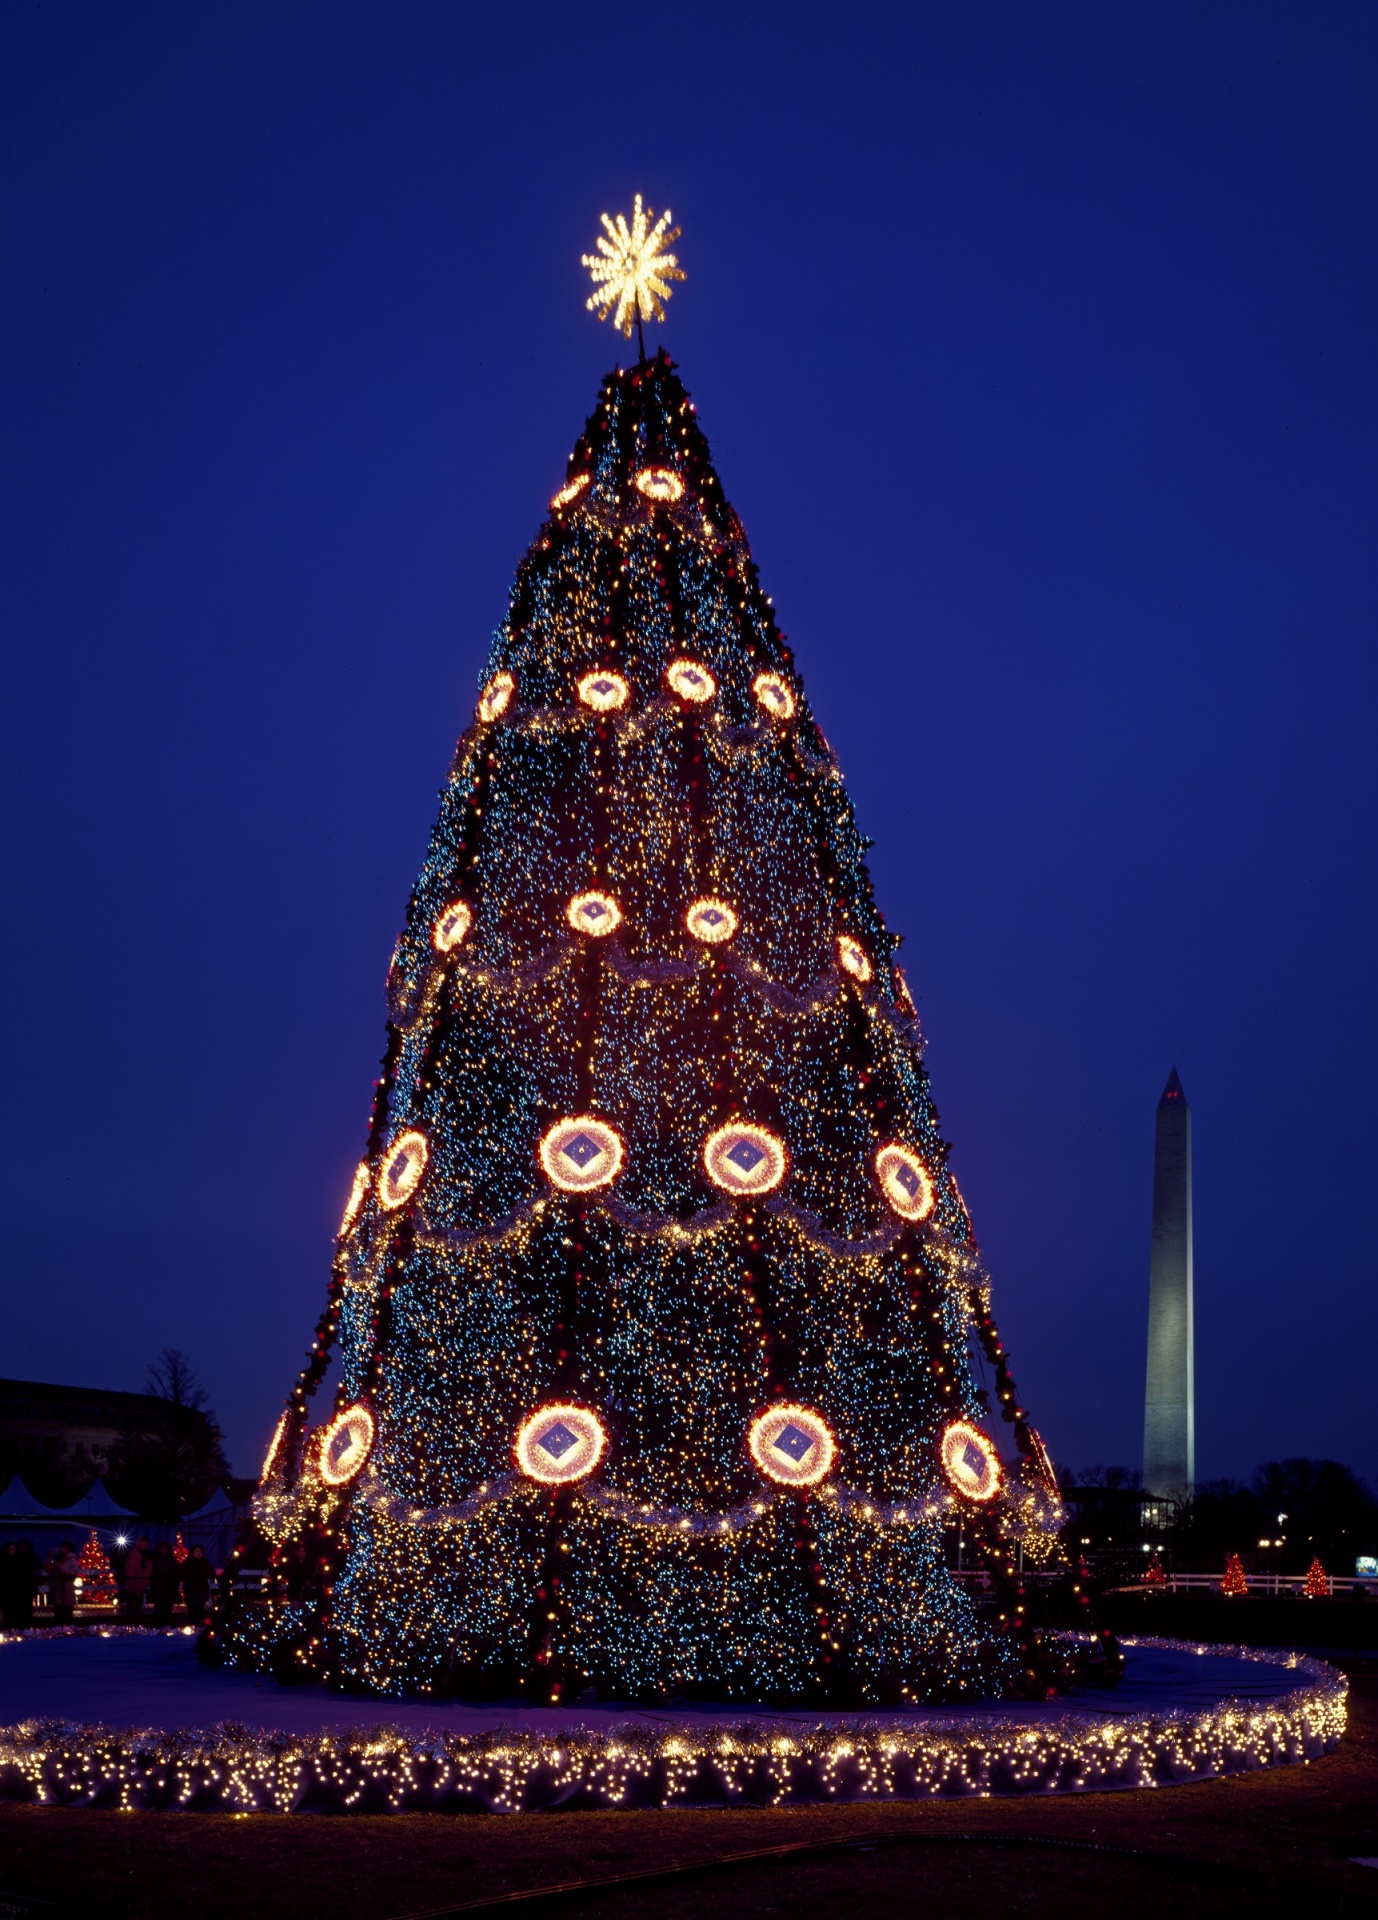 USA National Christmas Tree